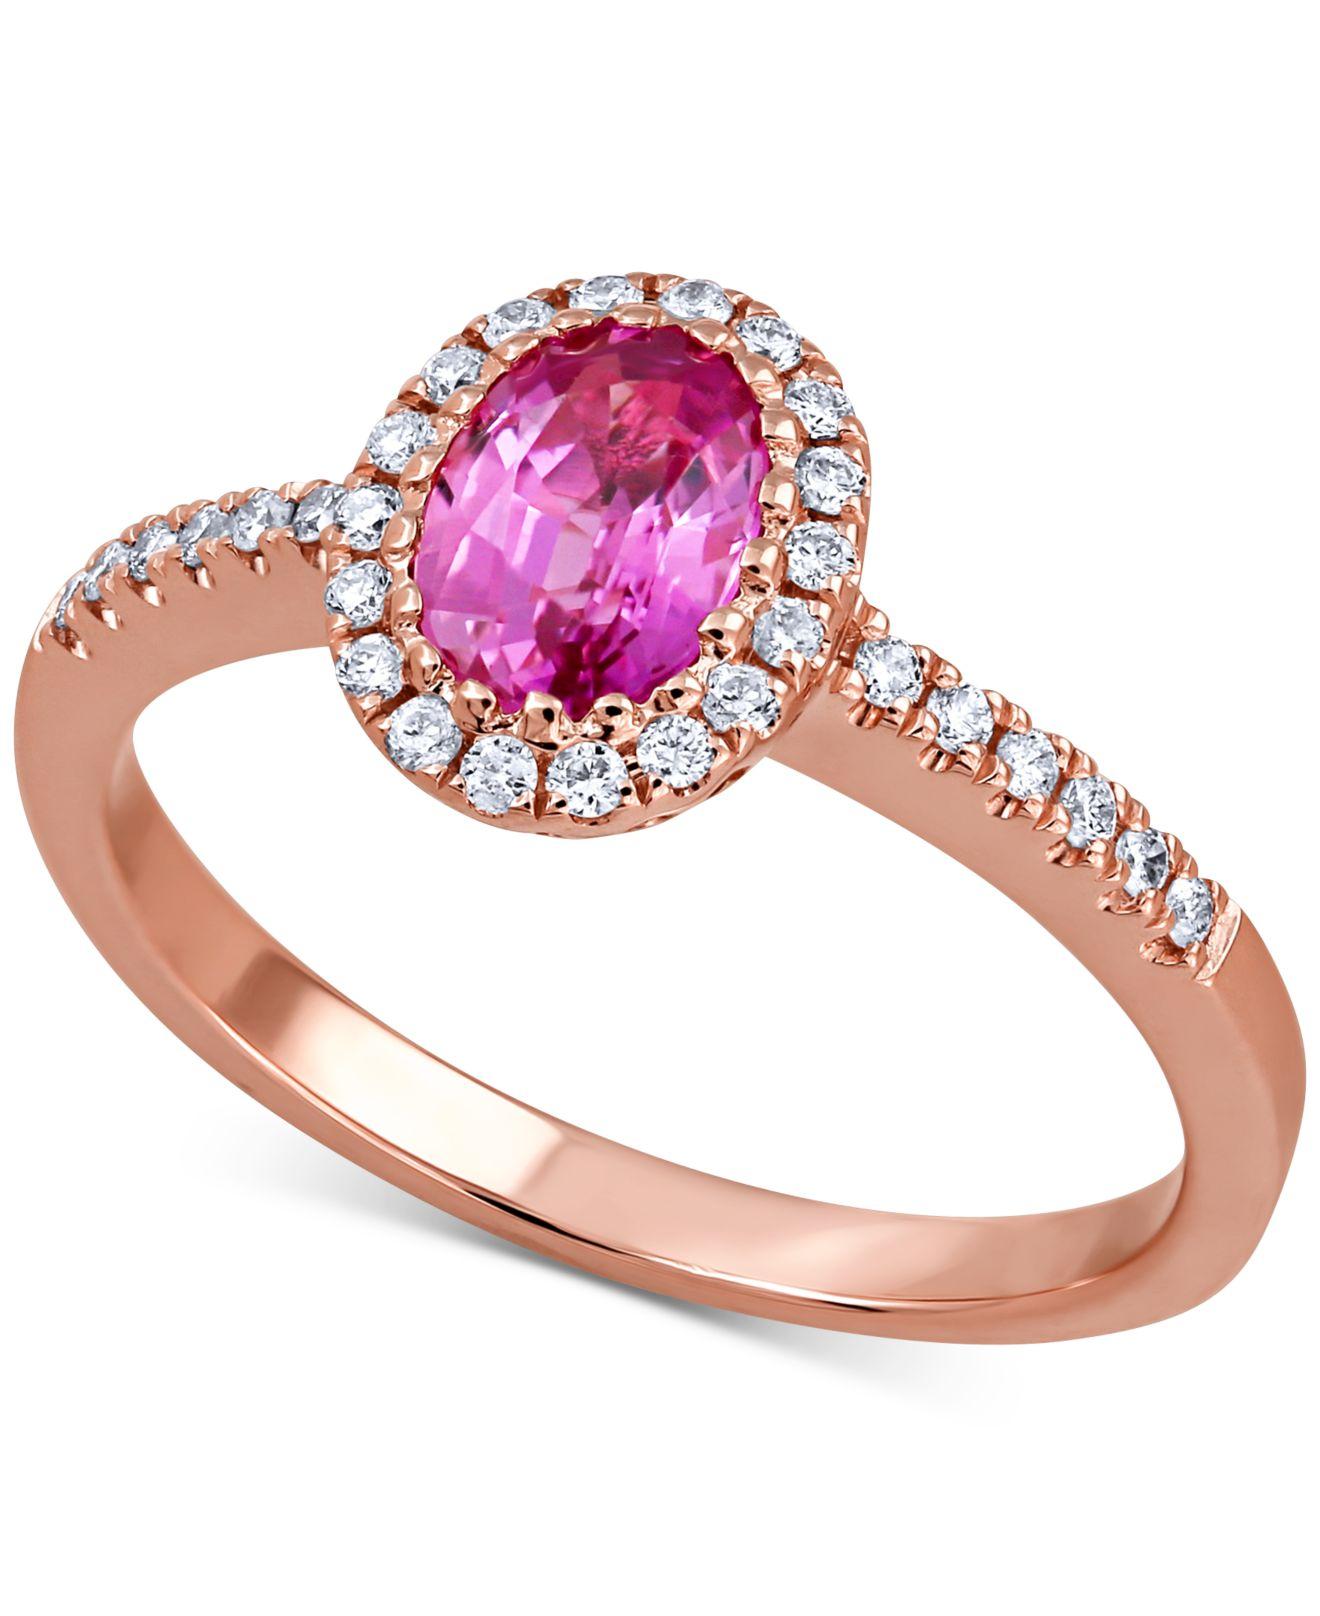 Lyst - Macy's Pink Sapphire (1 Ct. T.w.) & Diamond (1/5 Ct. T.w.) Ring ...